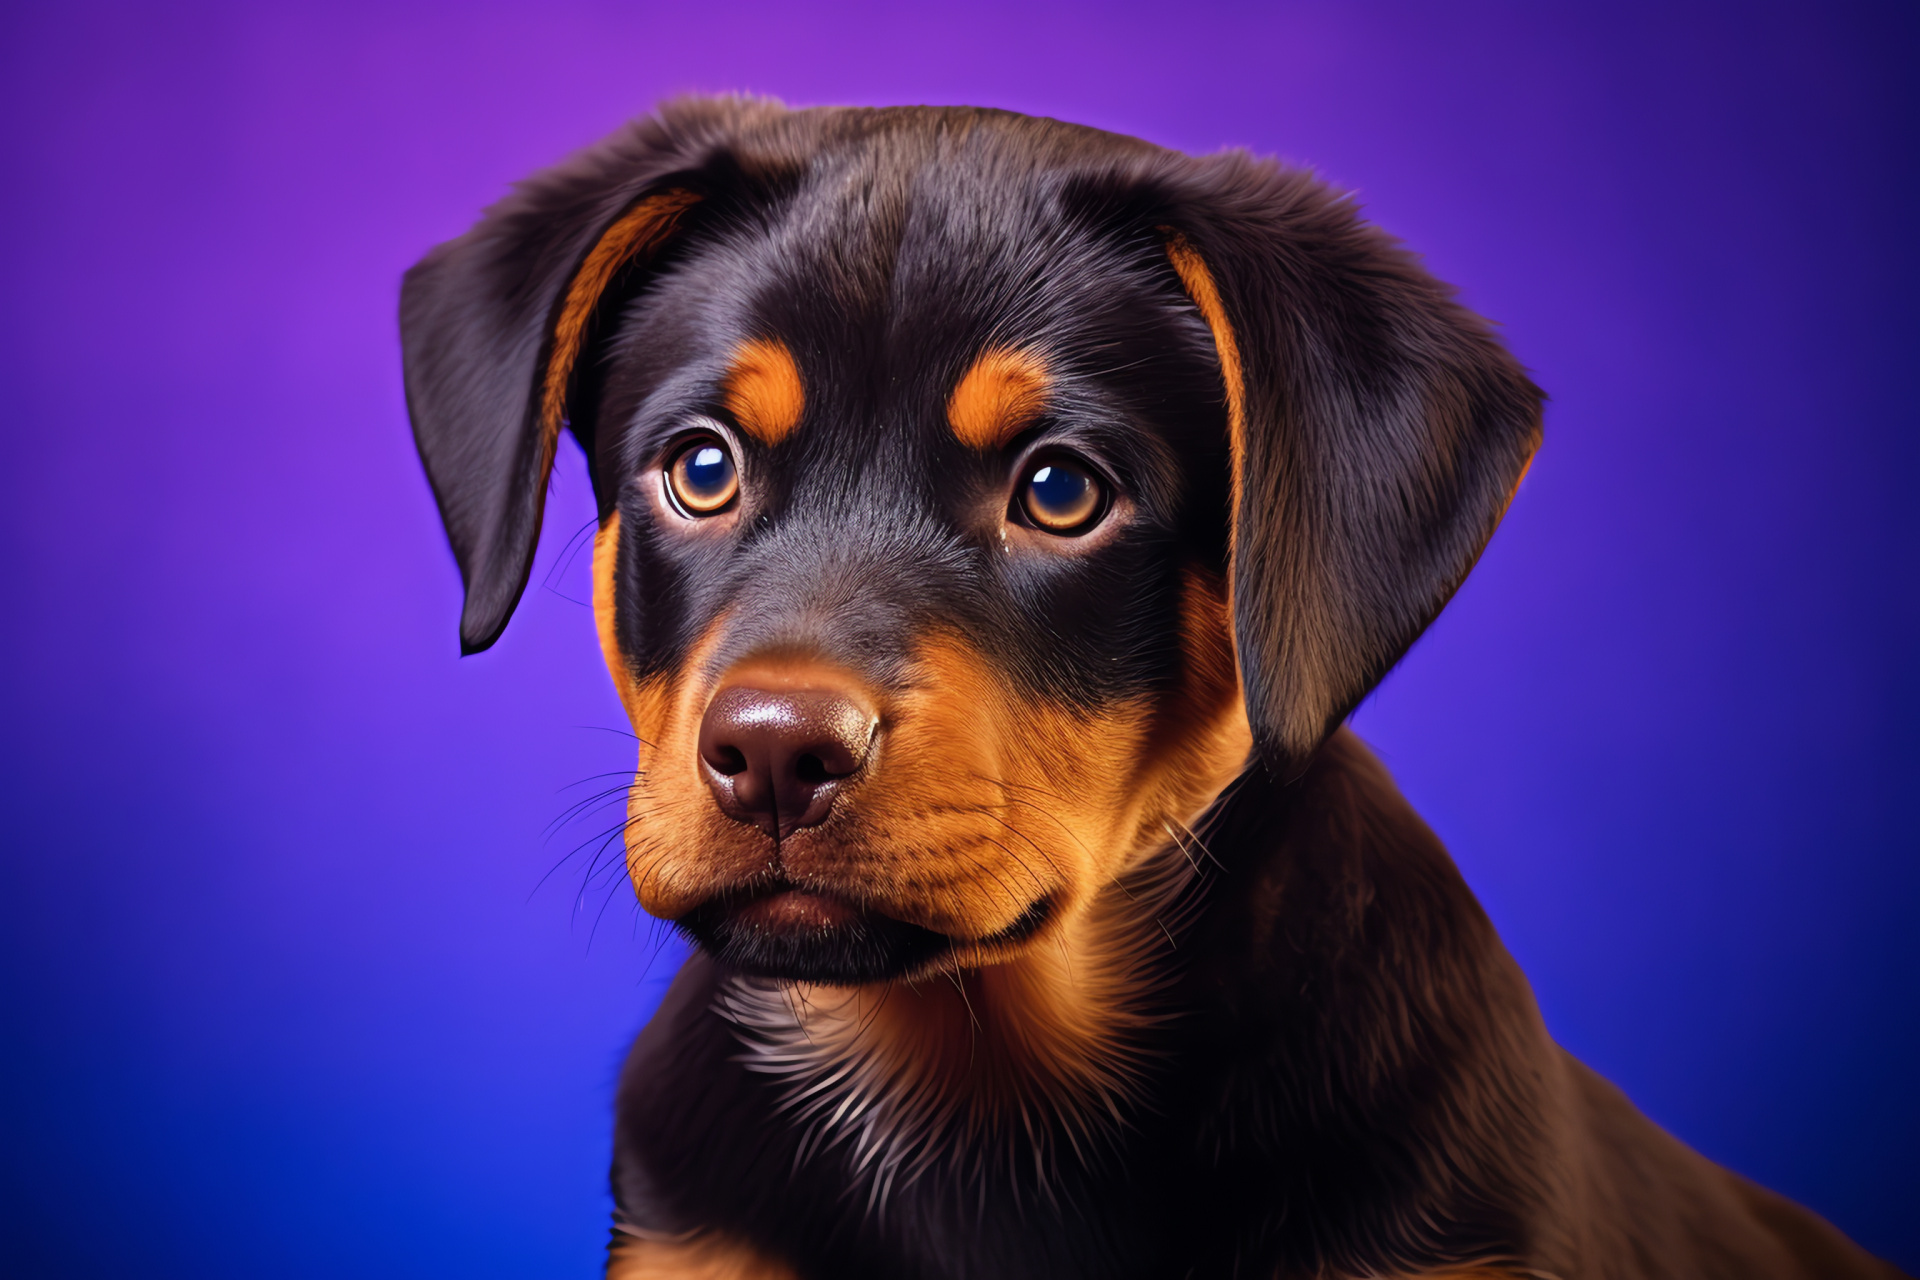 Rottweiler with blue eyes, canine striking gaze, sleek black fur, detailed close-up, tri-color backdrop, HD Desktop Image